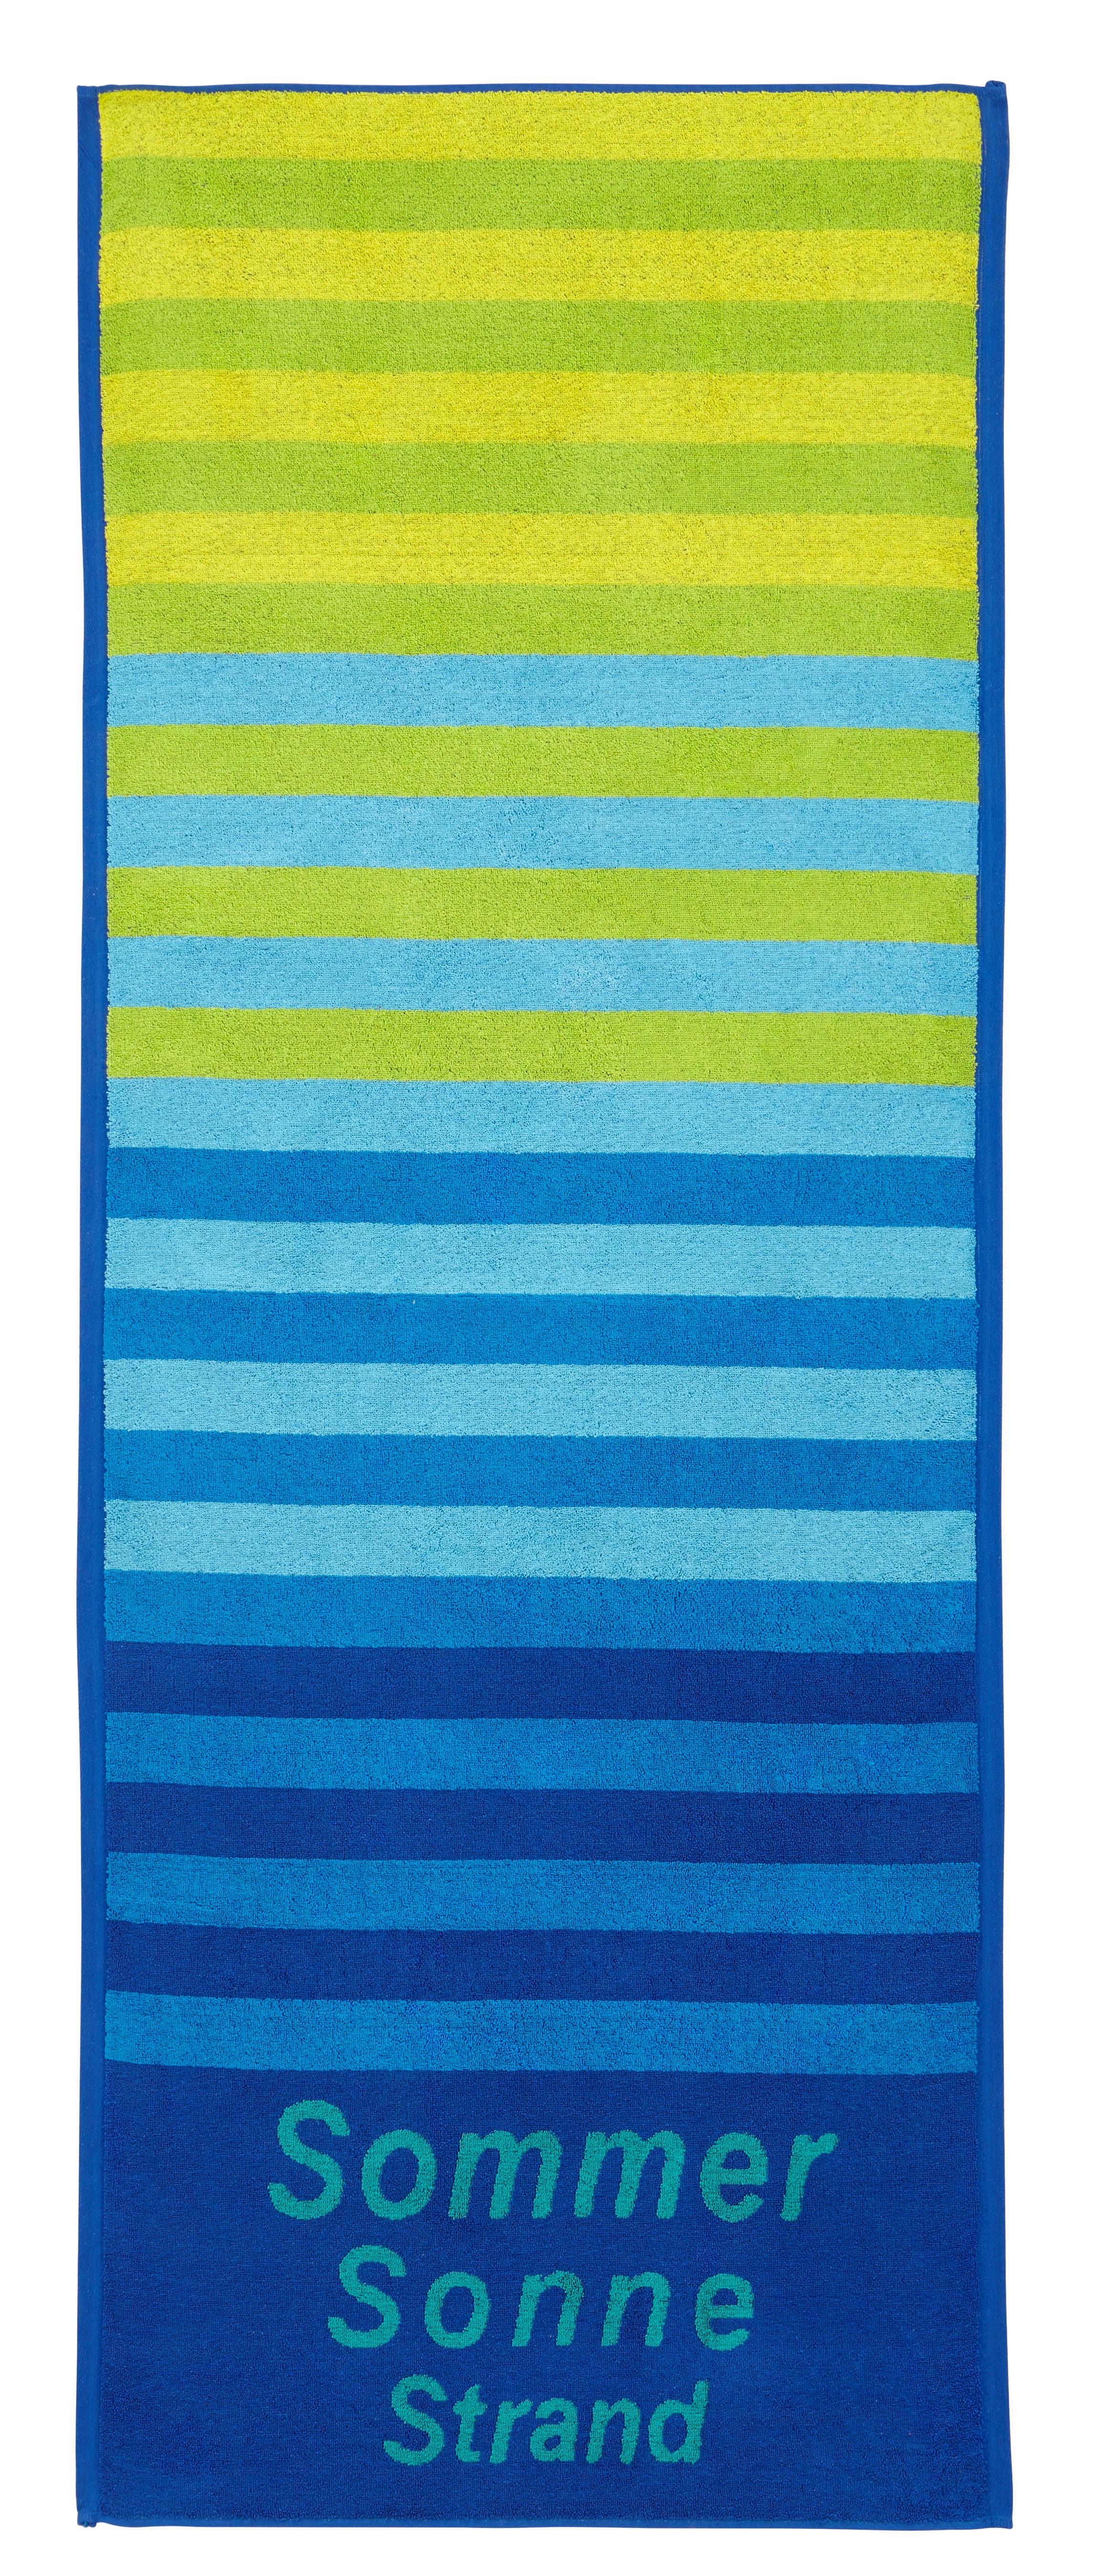 Strandtuch Dyckhoff ca. 70x180cm - Blau, KONVENTIONELL, Textil (70/180cm) - Dyckhoff